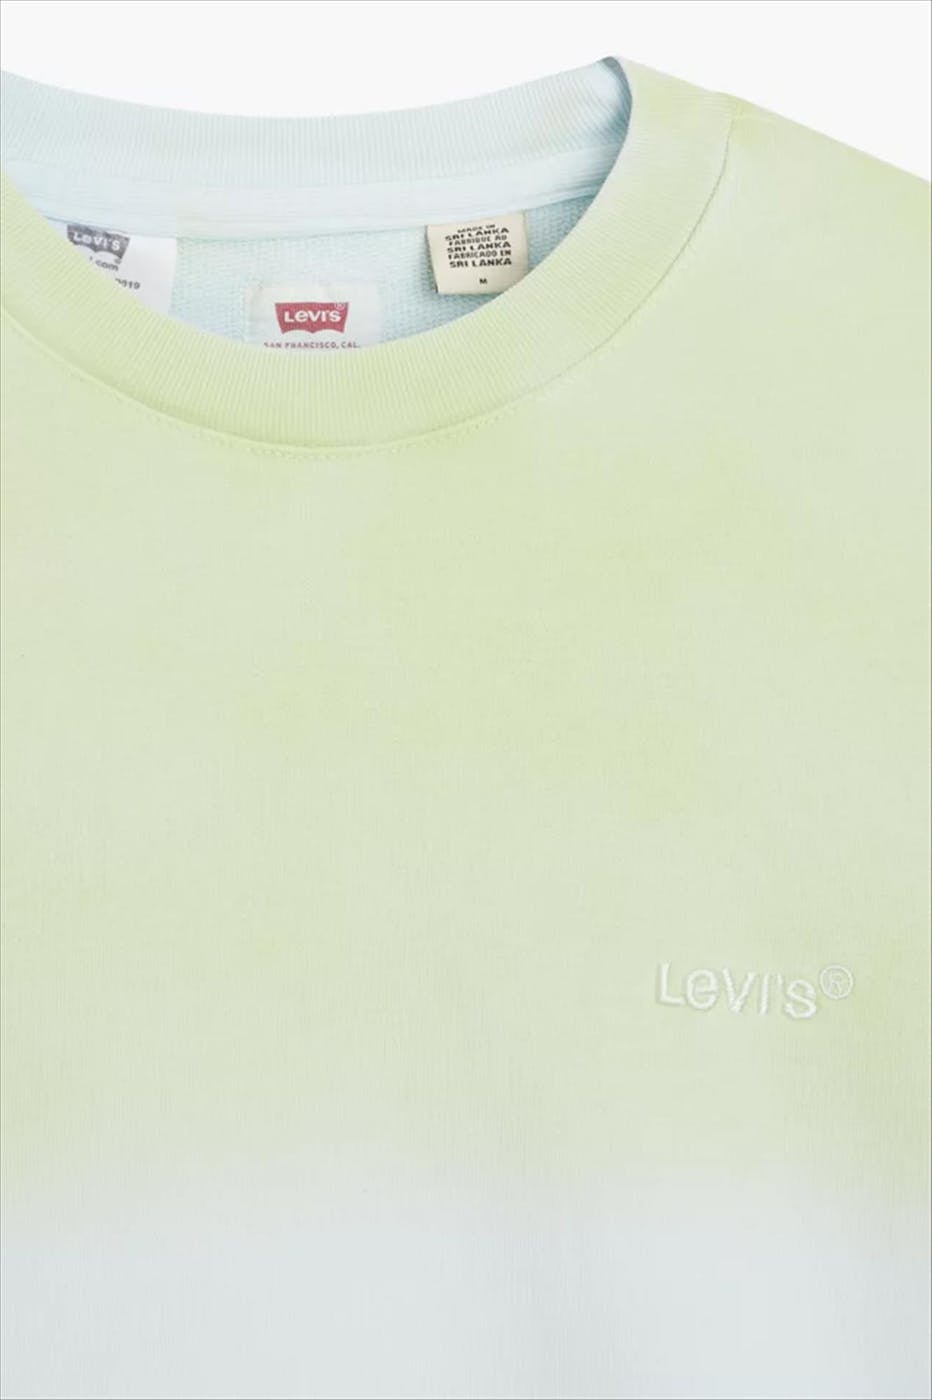 Levi's - Multicolour ombre sweater